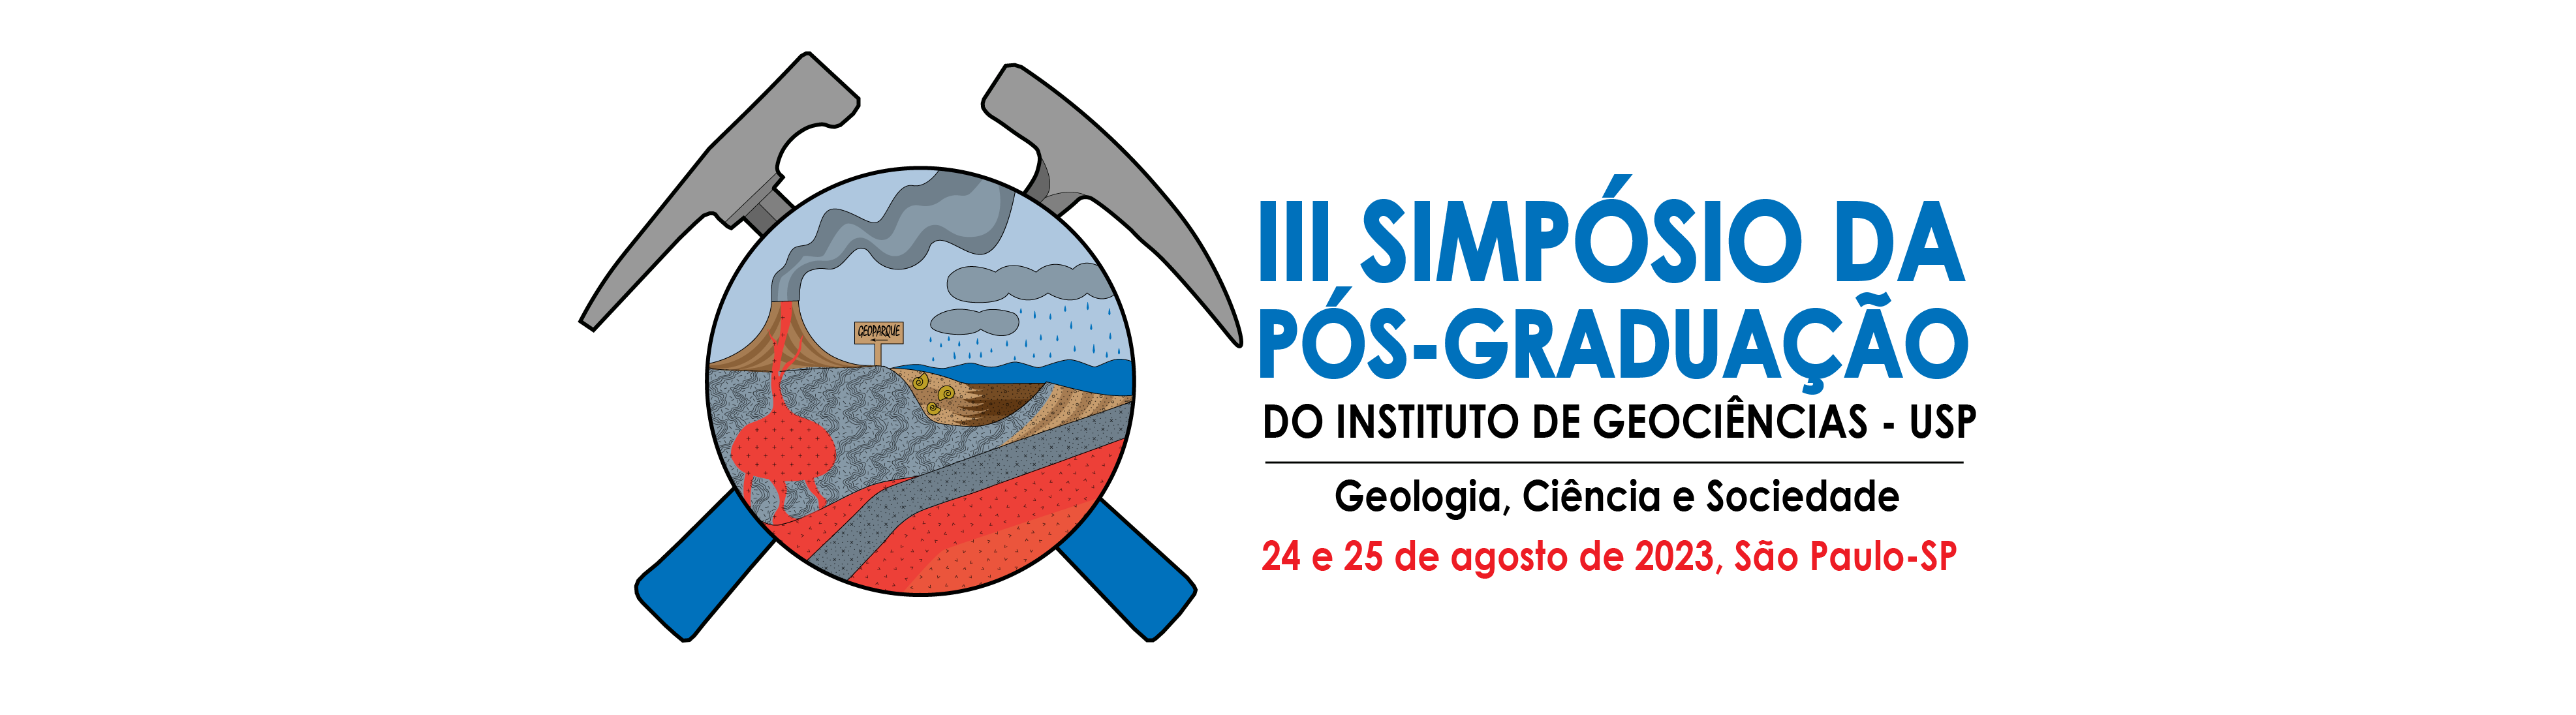 III Simpósio da Pós-Graduação do Instituto de Geociências – USP